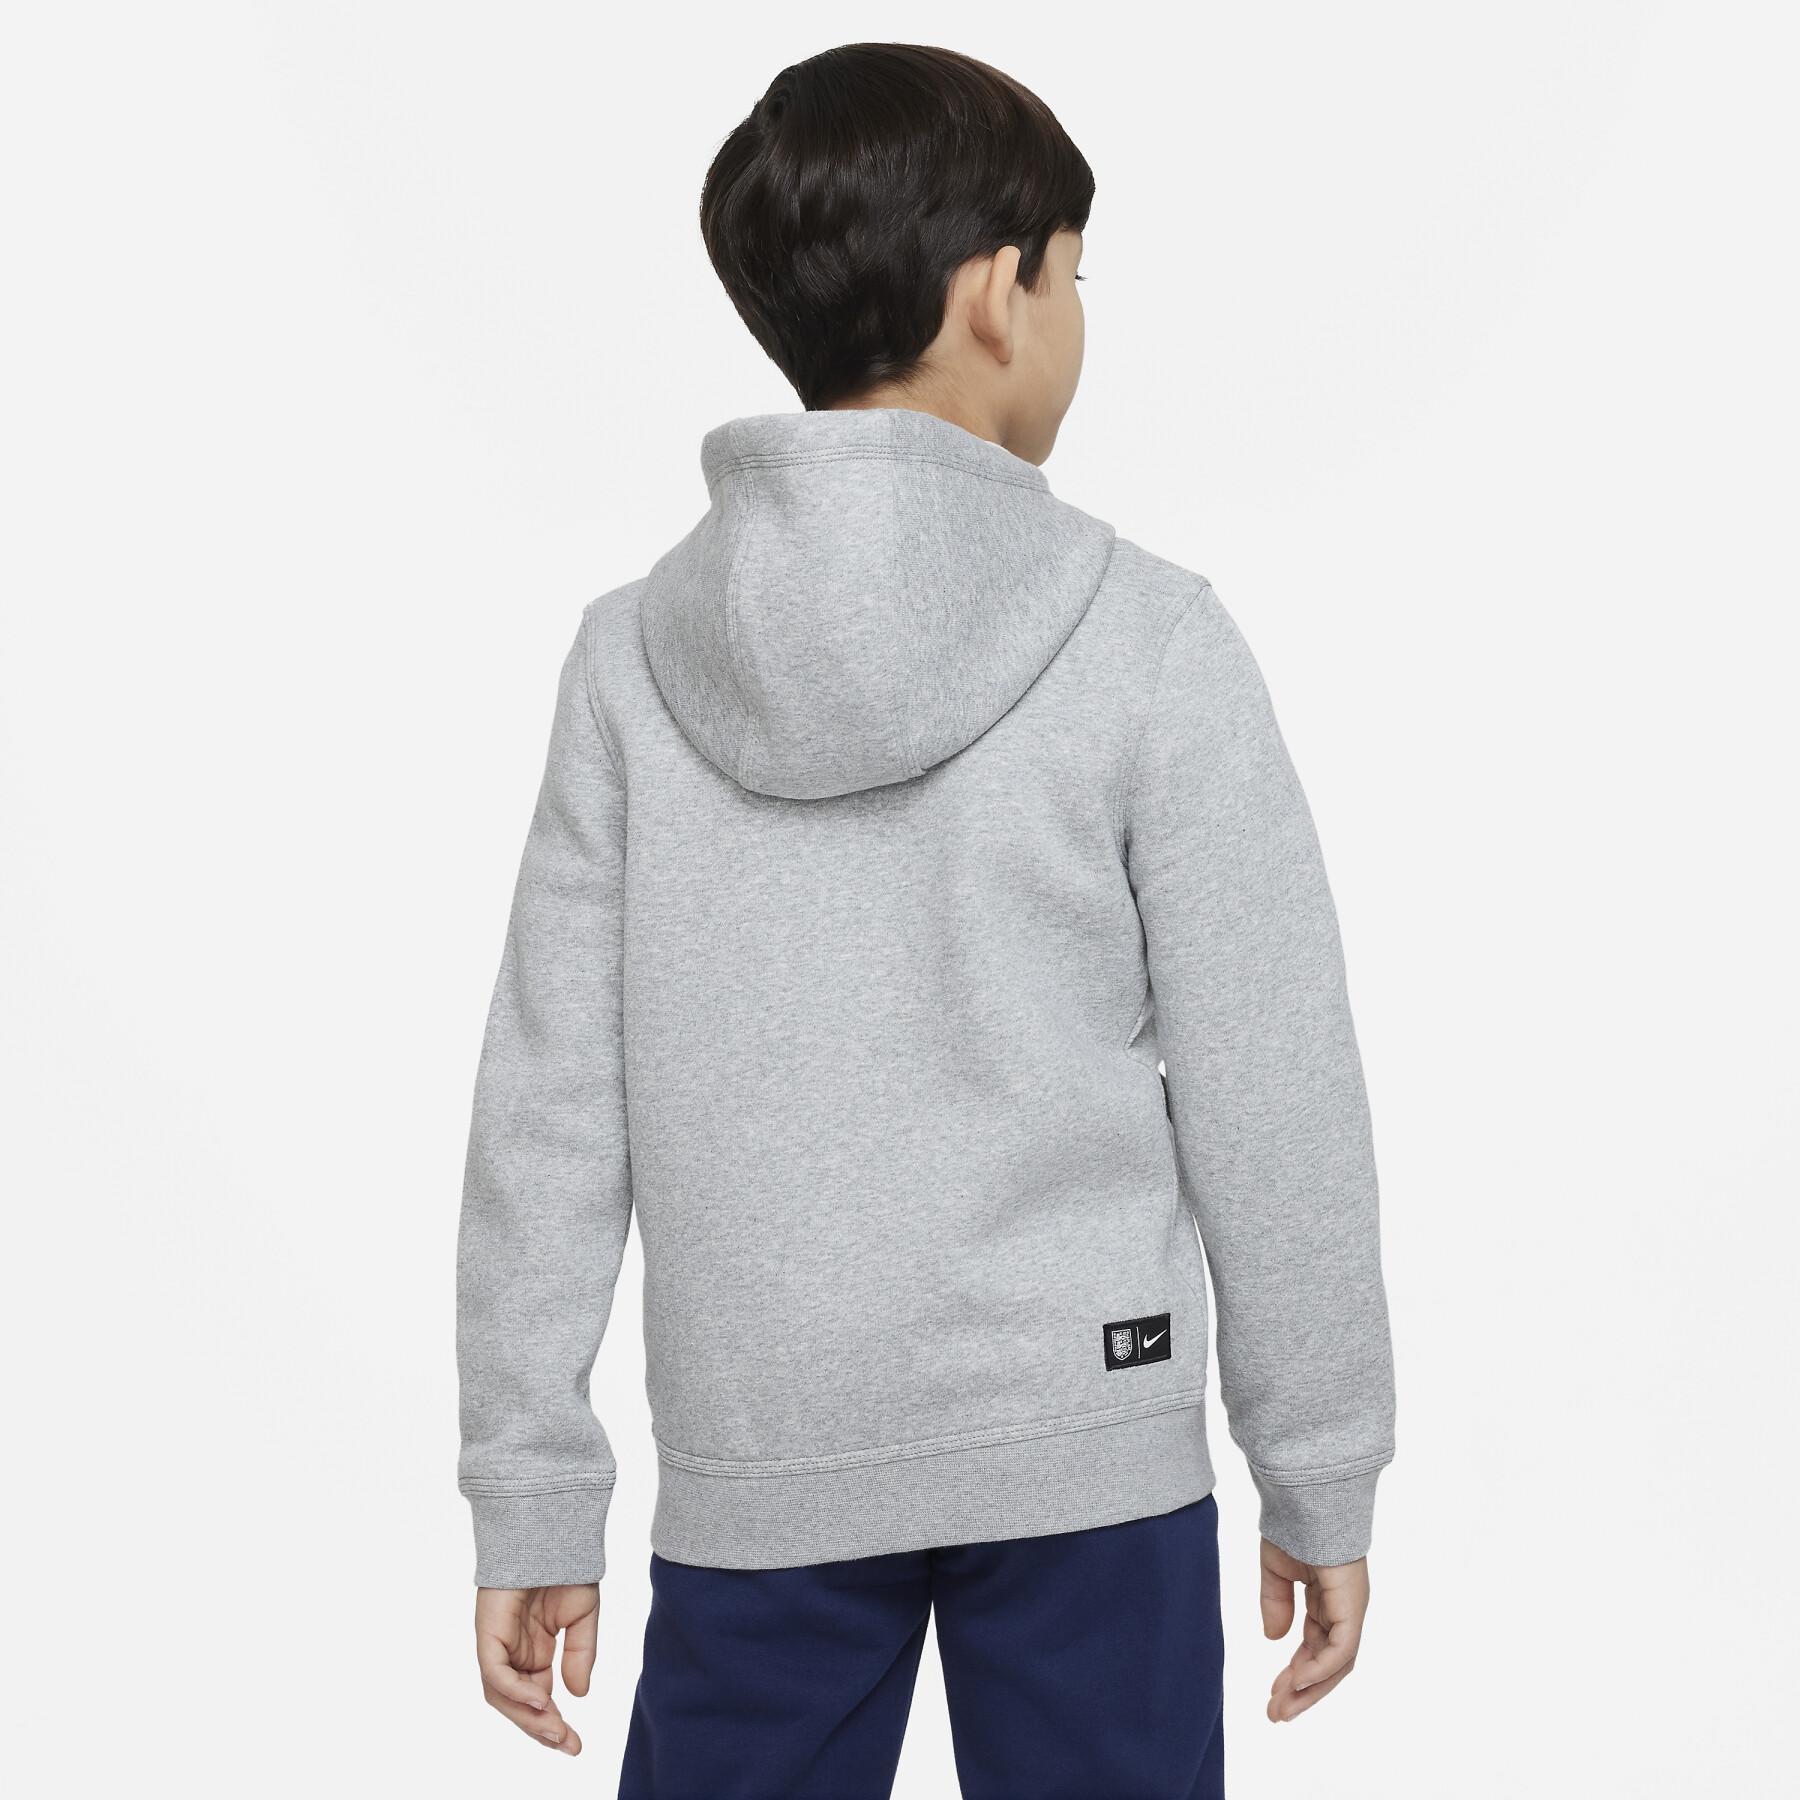 Kinder Kapuzen-Sweatshirt mit Reißverschluss Angleterre CLB BB Fund